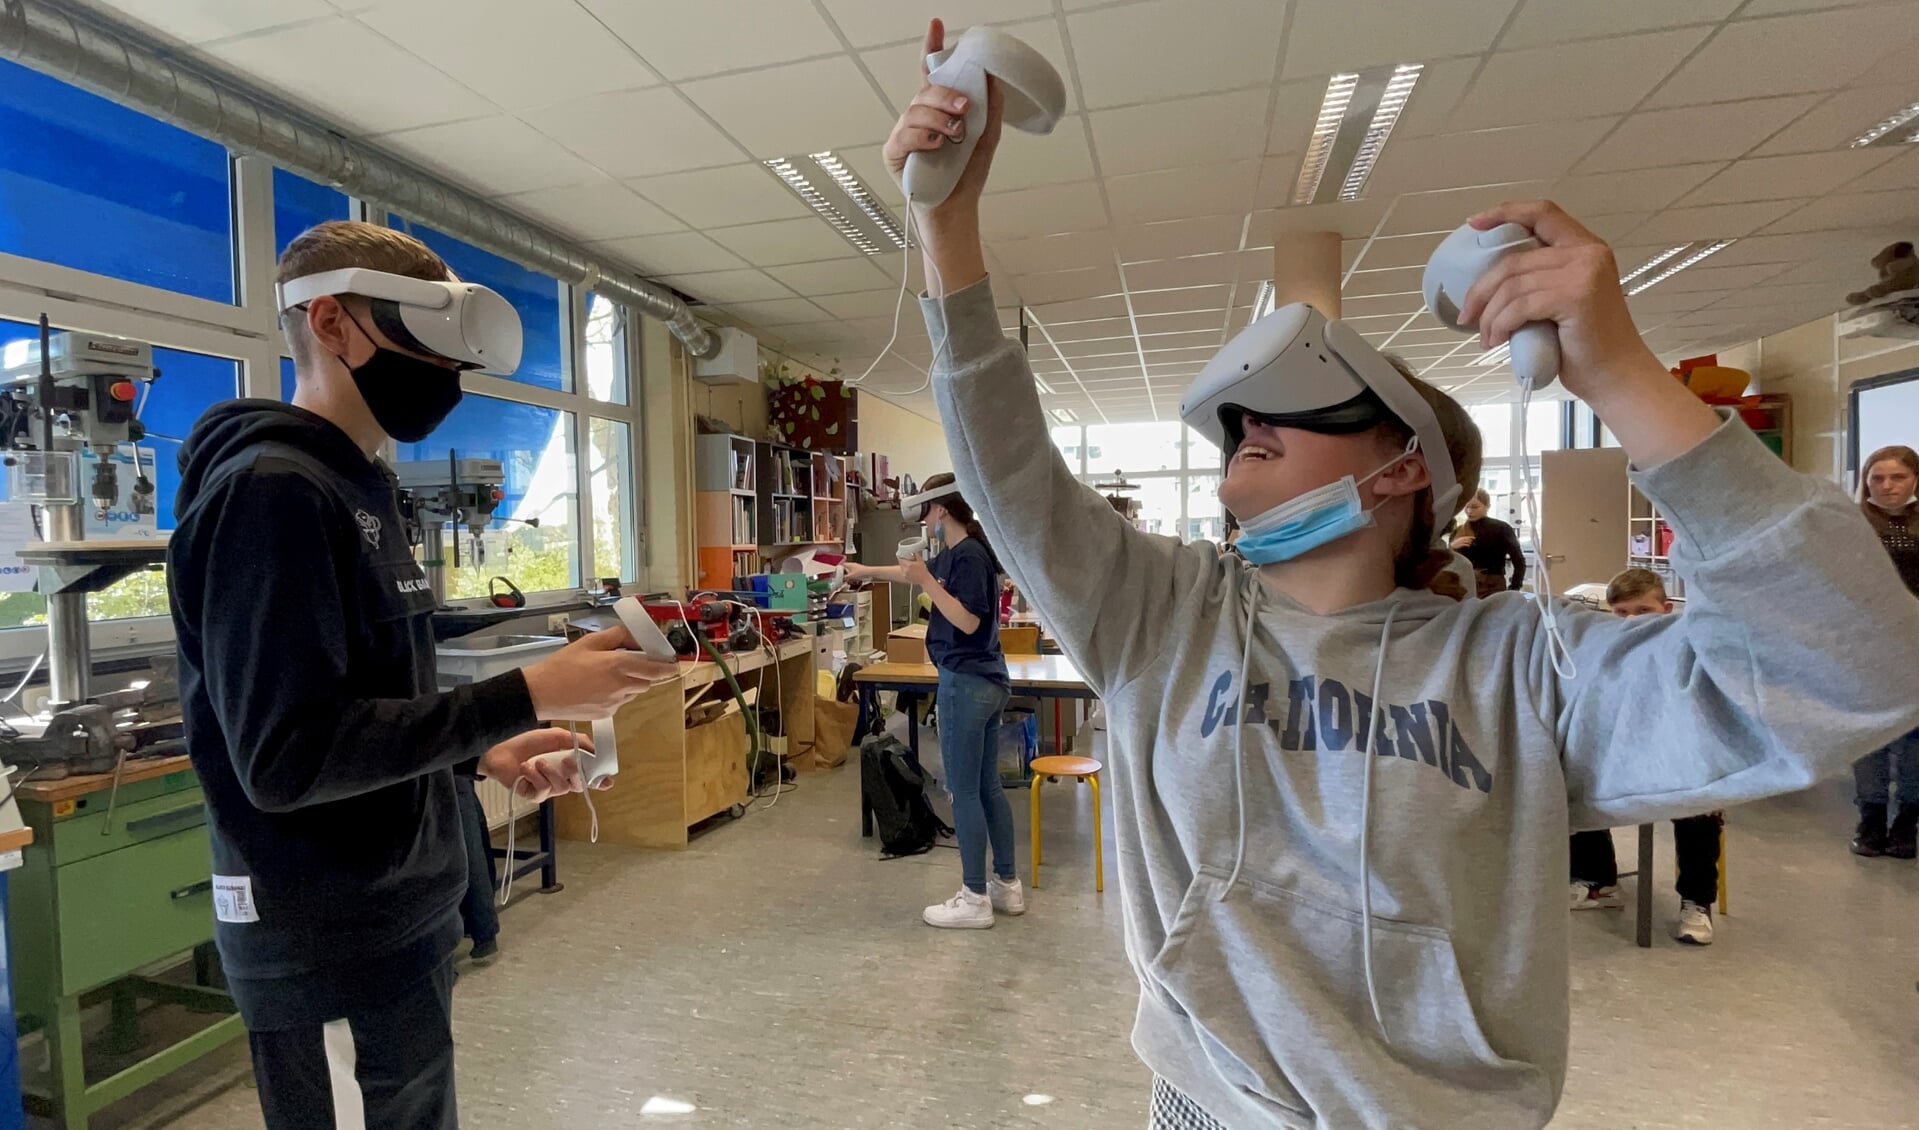 Leerlingen van Het Hogeland College op bezoek bij een bedrijf, maar wel met hulp van een VR-bril.